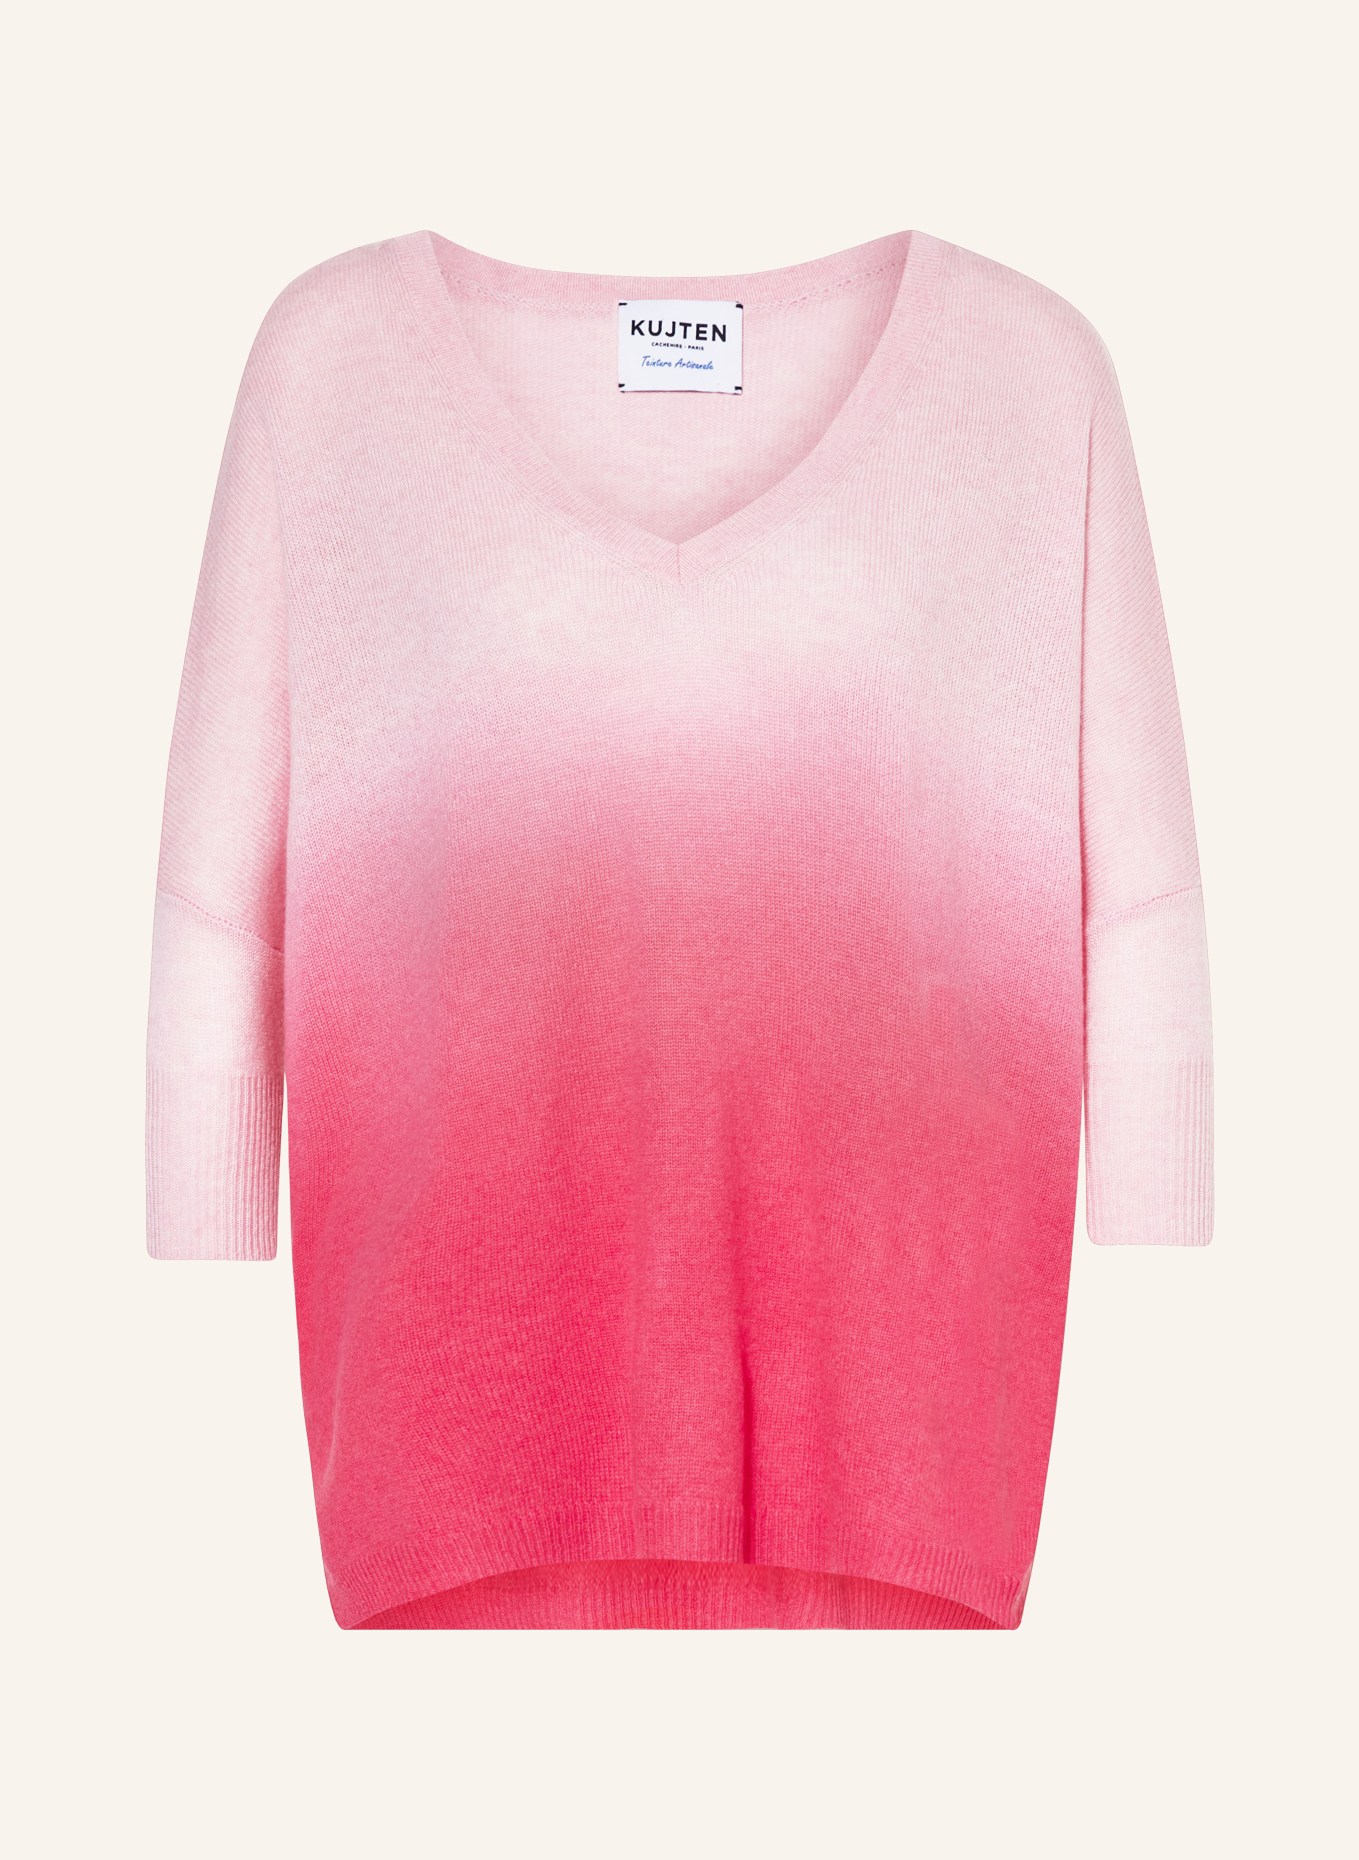 KUJTEN Cashmere-Pullover MINI, Farbe: HELLROSA/ PINK (Bild 1)